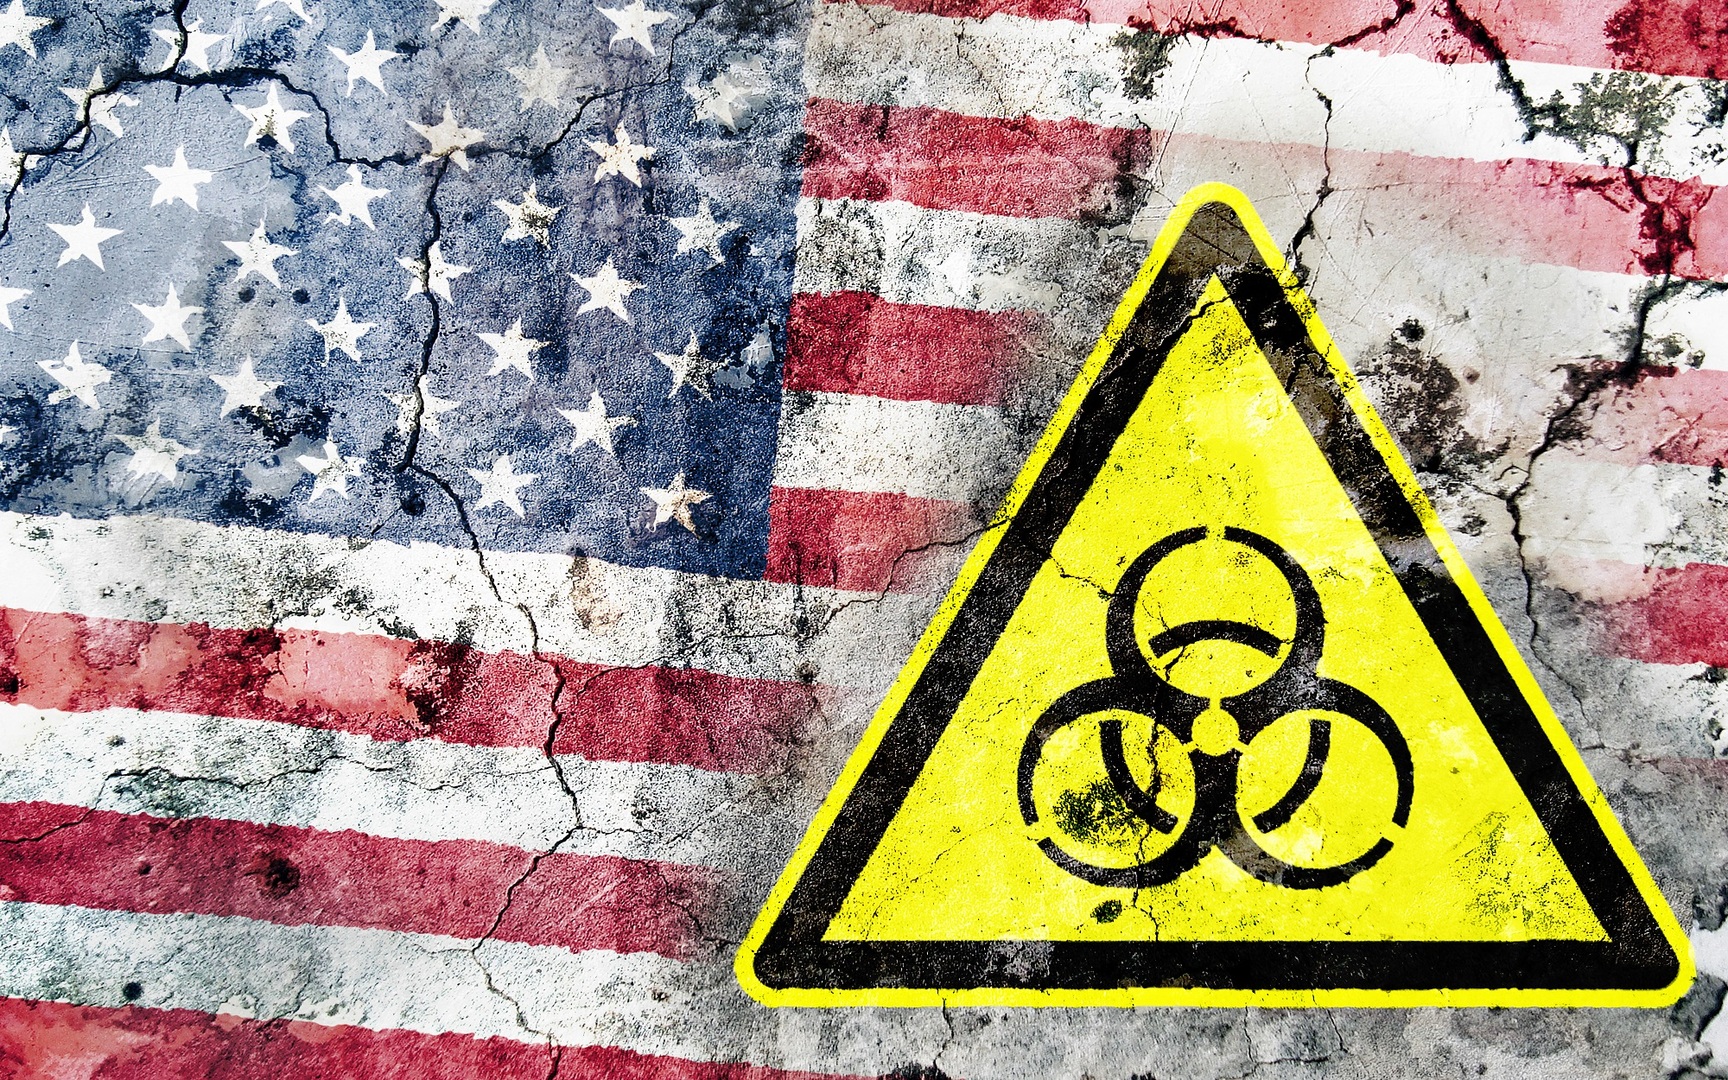 وزارة الطاقة الأمريكية تعتزم بدء شراء اليورانيوم من المنتجين الأمريكيين بدلا من الروس